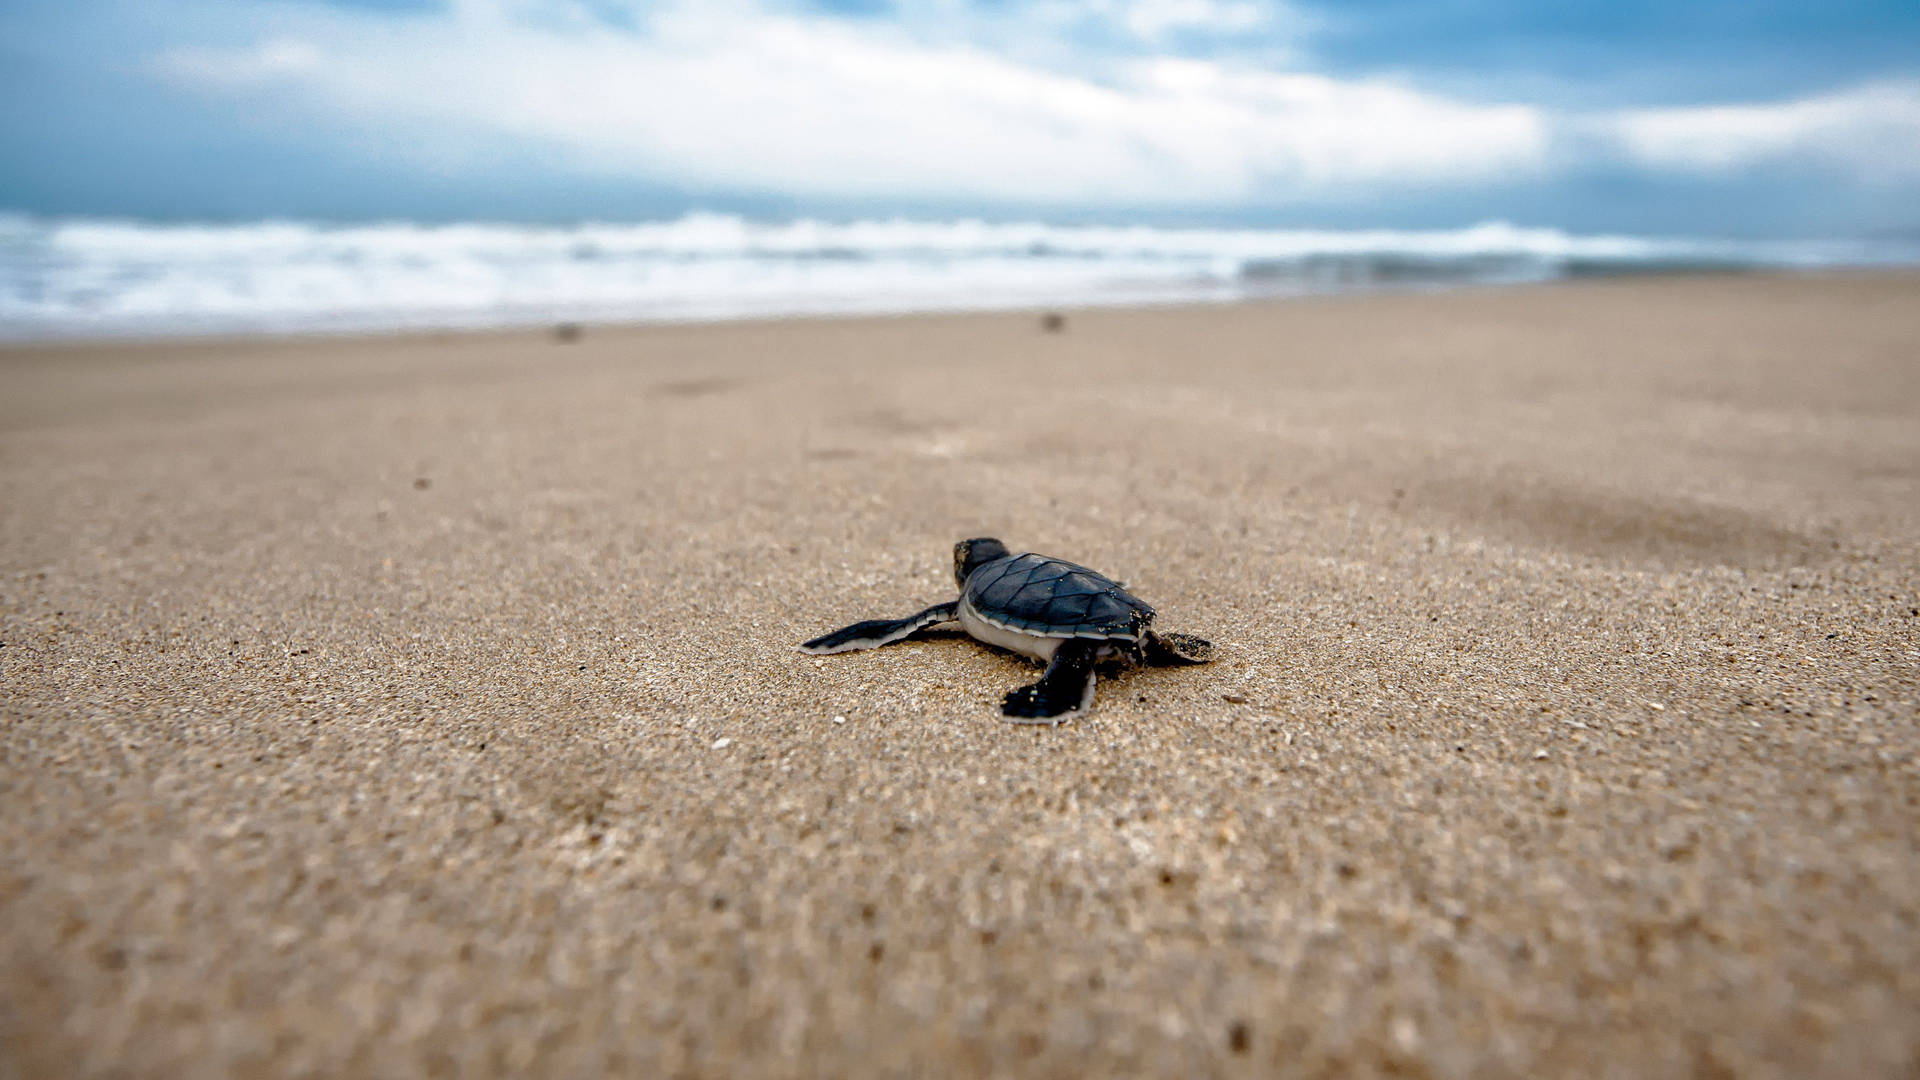 Small Black Cute Turtle On Seashore